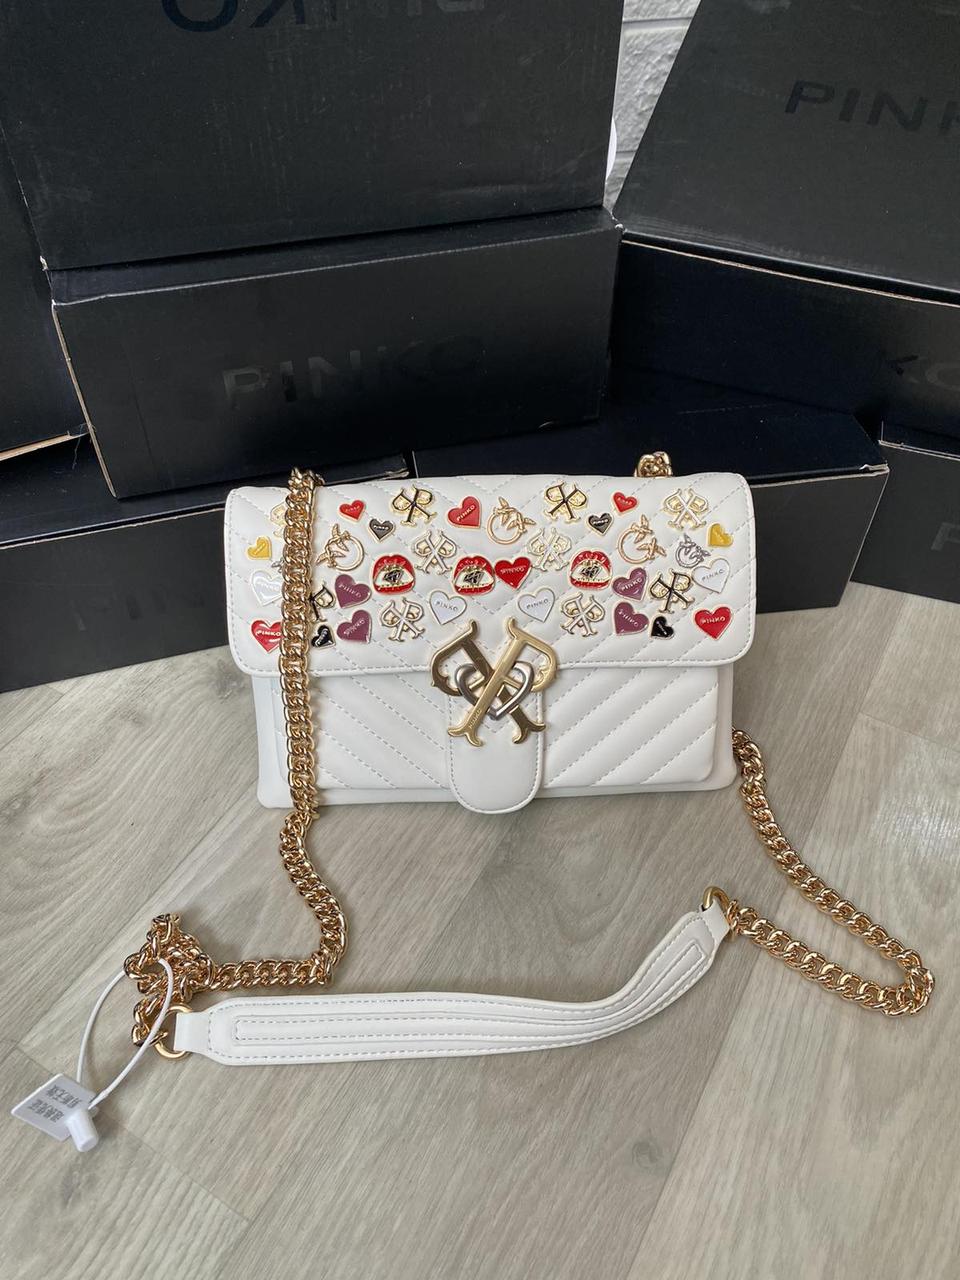 

Женская брендовая сумка Pinko Love Bag Пинко белая, женские брендовые сумки, сумка на плечо, 375, Белый